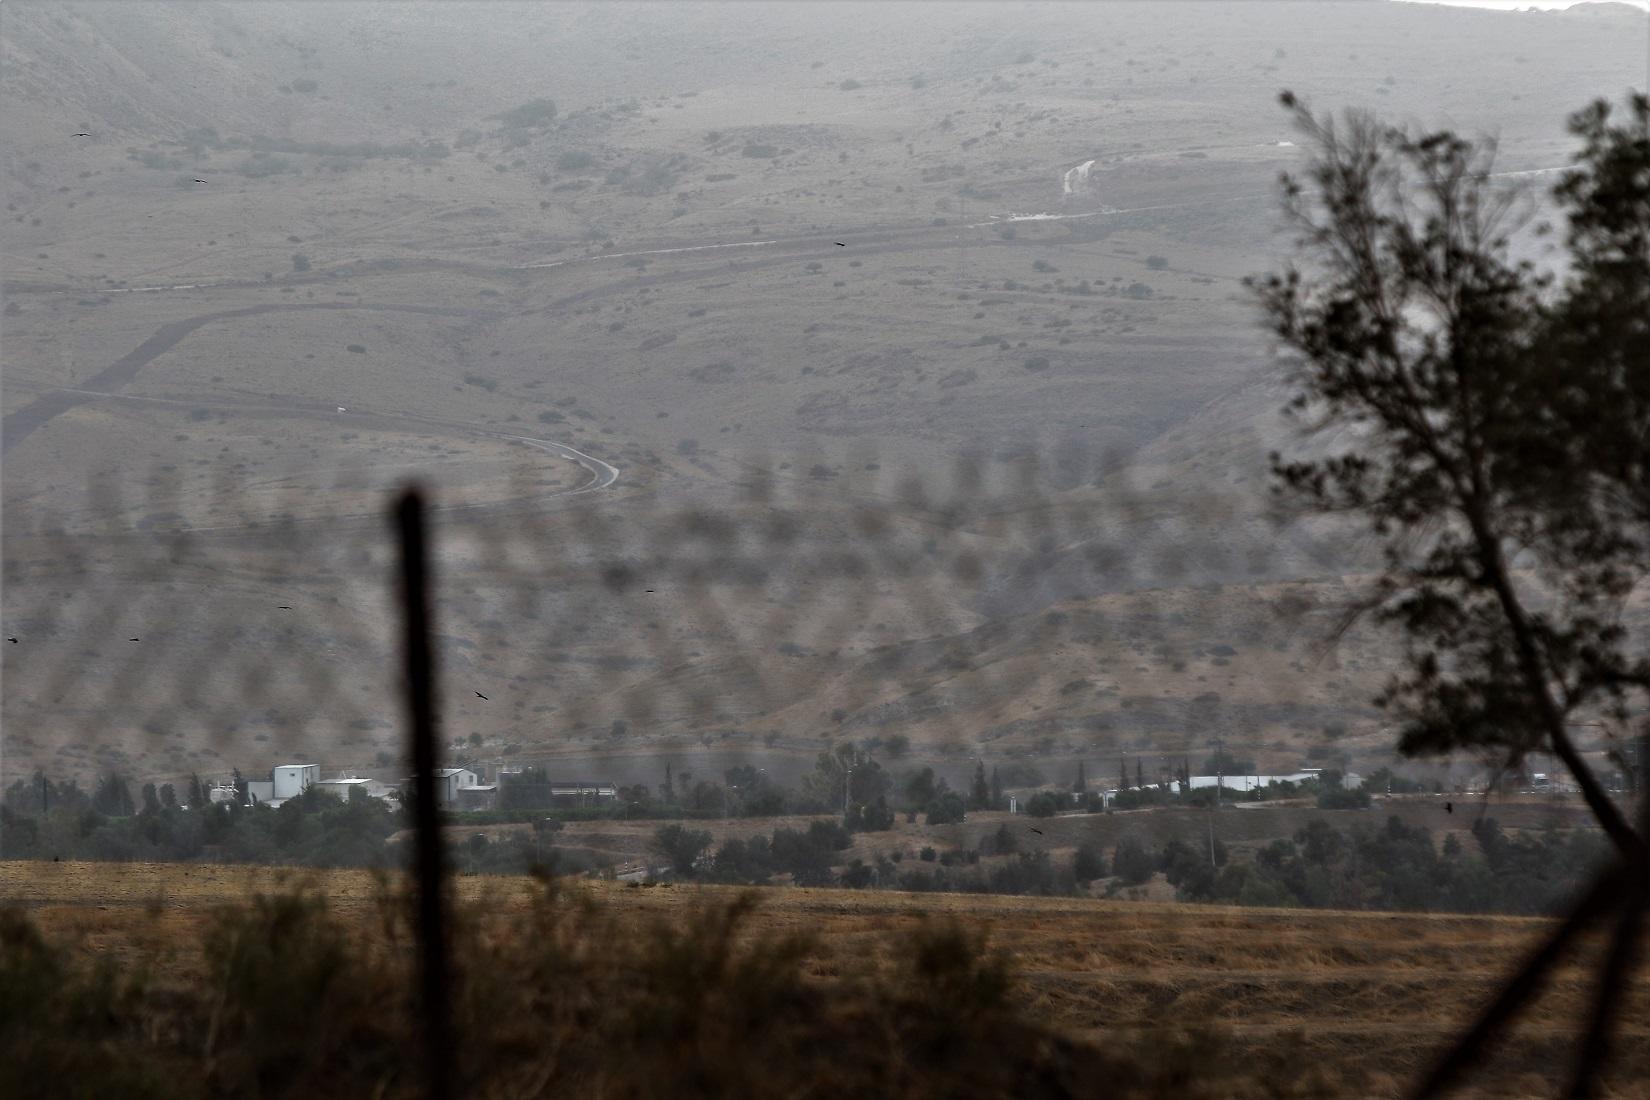 صورة لبلدة الباقورة المستعادة ويظهر فيها سياج أمني حدودي بين أراض أردنية وأراض فلسطينية محتلة. صلاح ملكاوي / المملكة